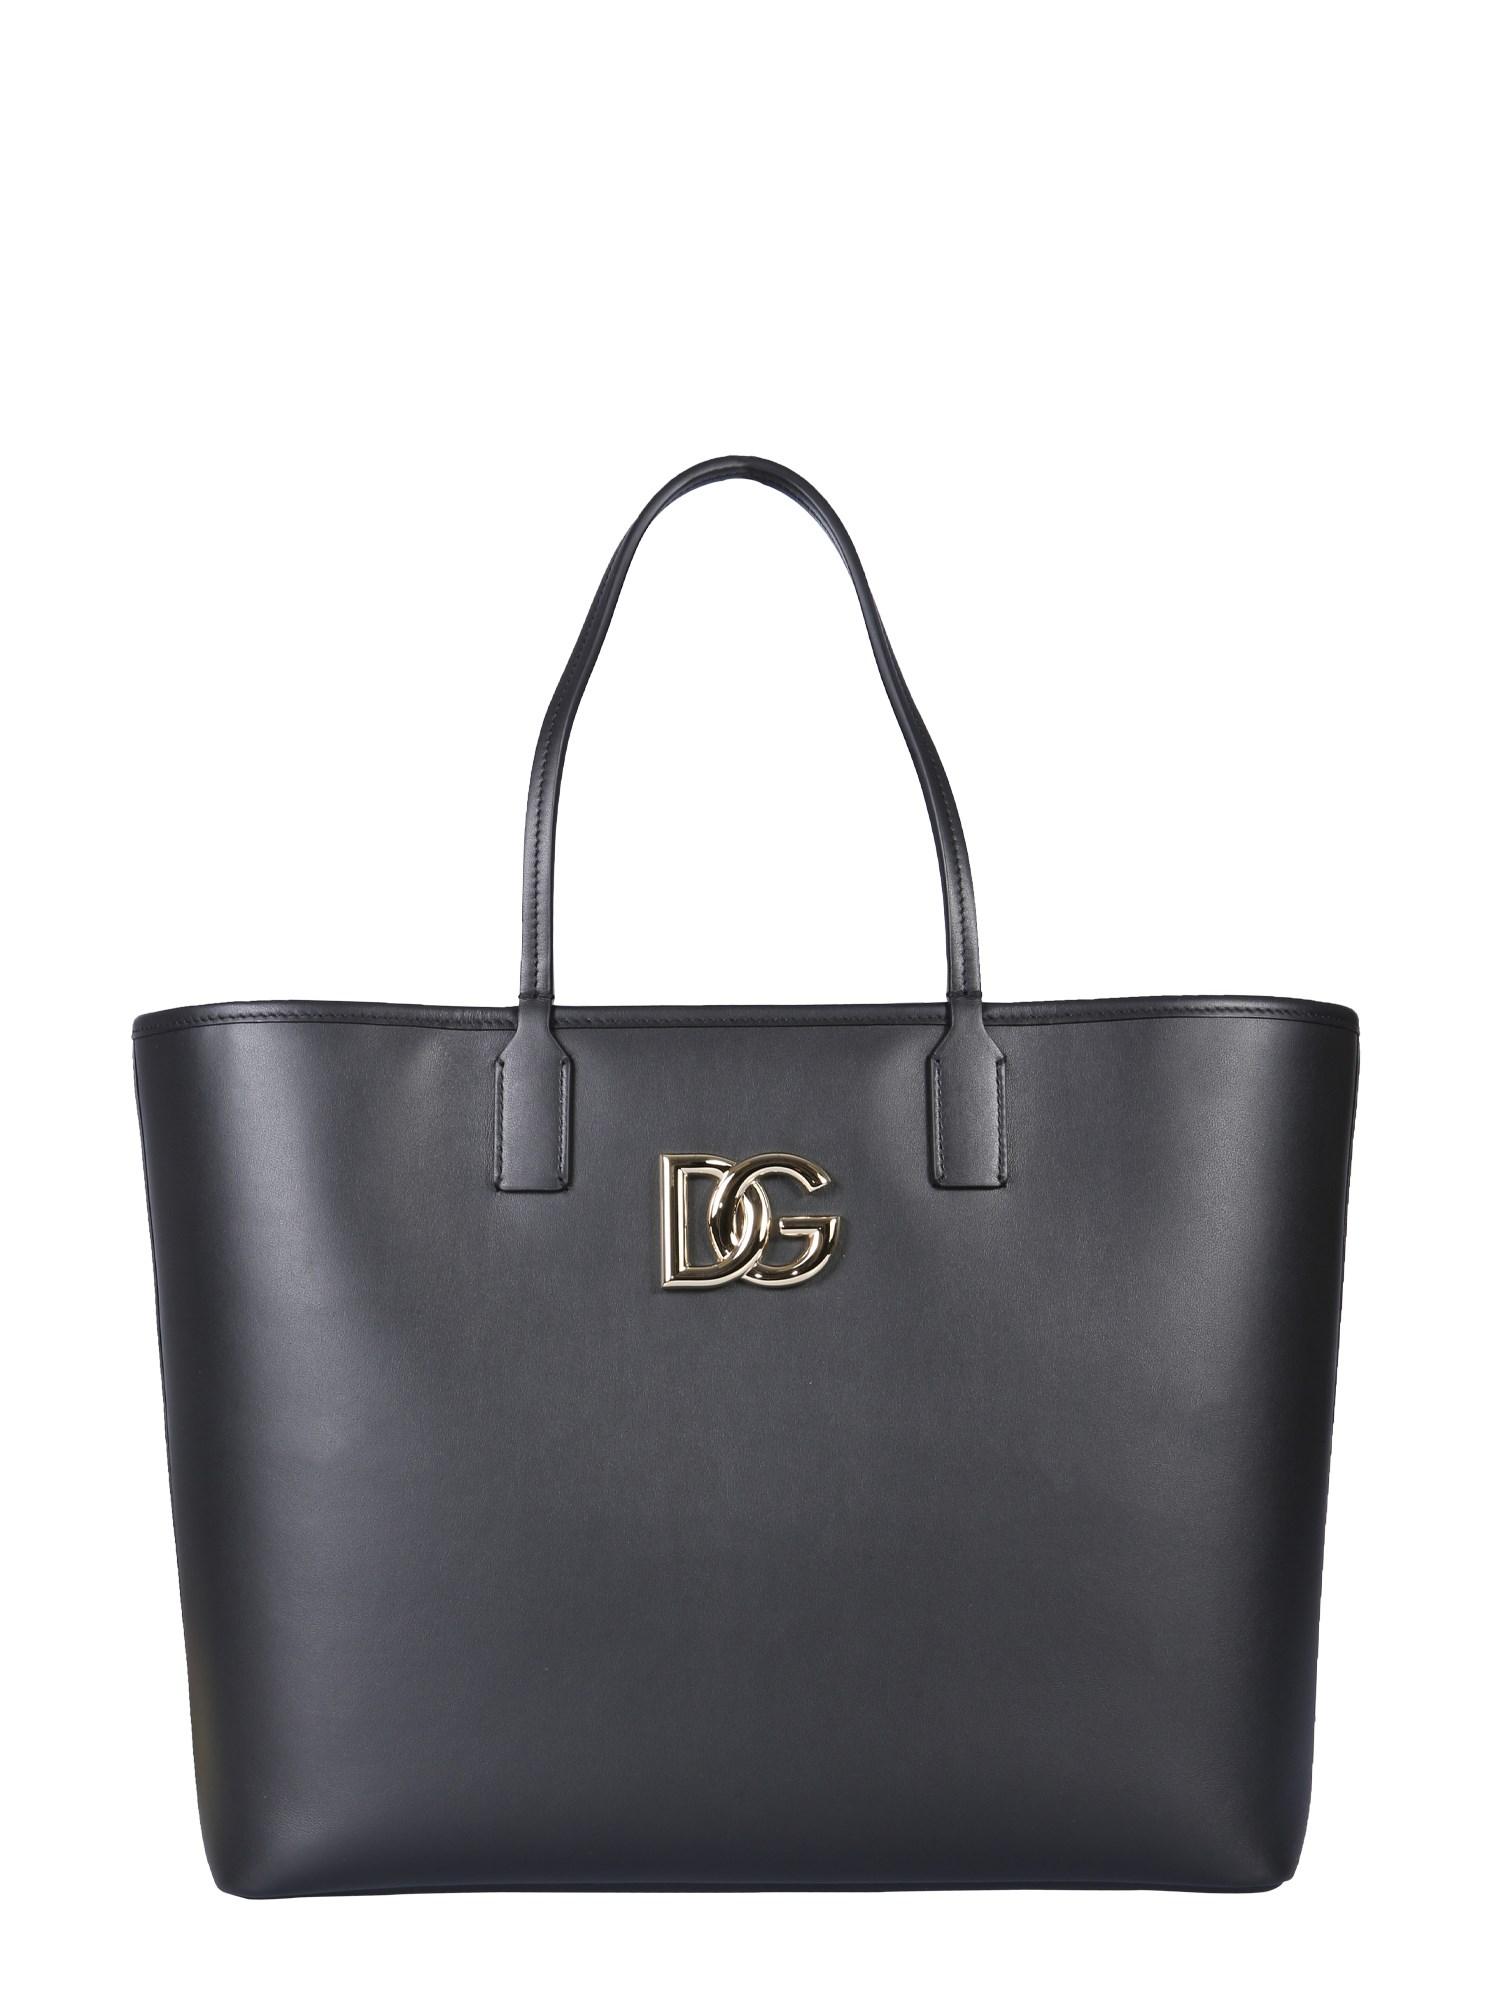 Dolce & Gabbana Mittelgroßer Shopper Aus Leder fefé in Schwarz Damen Taschen Tote Taschen 